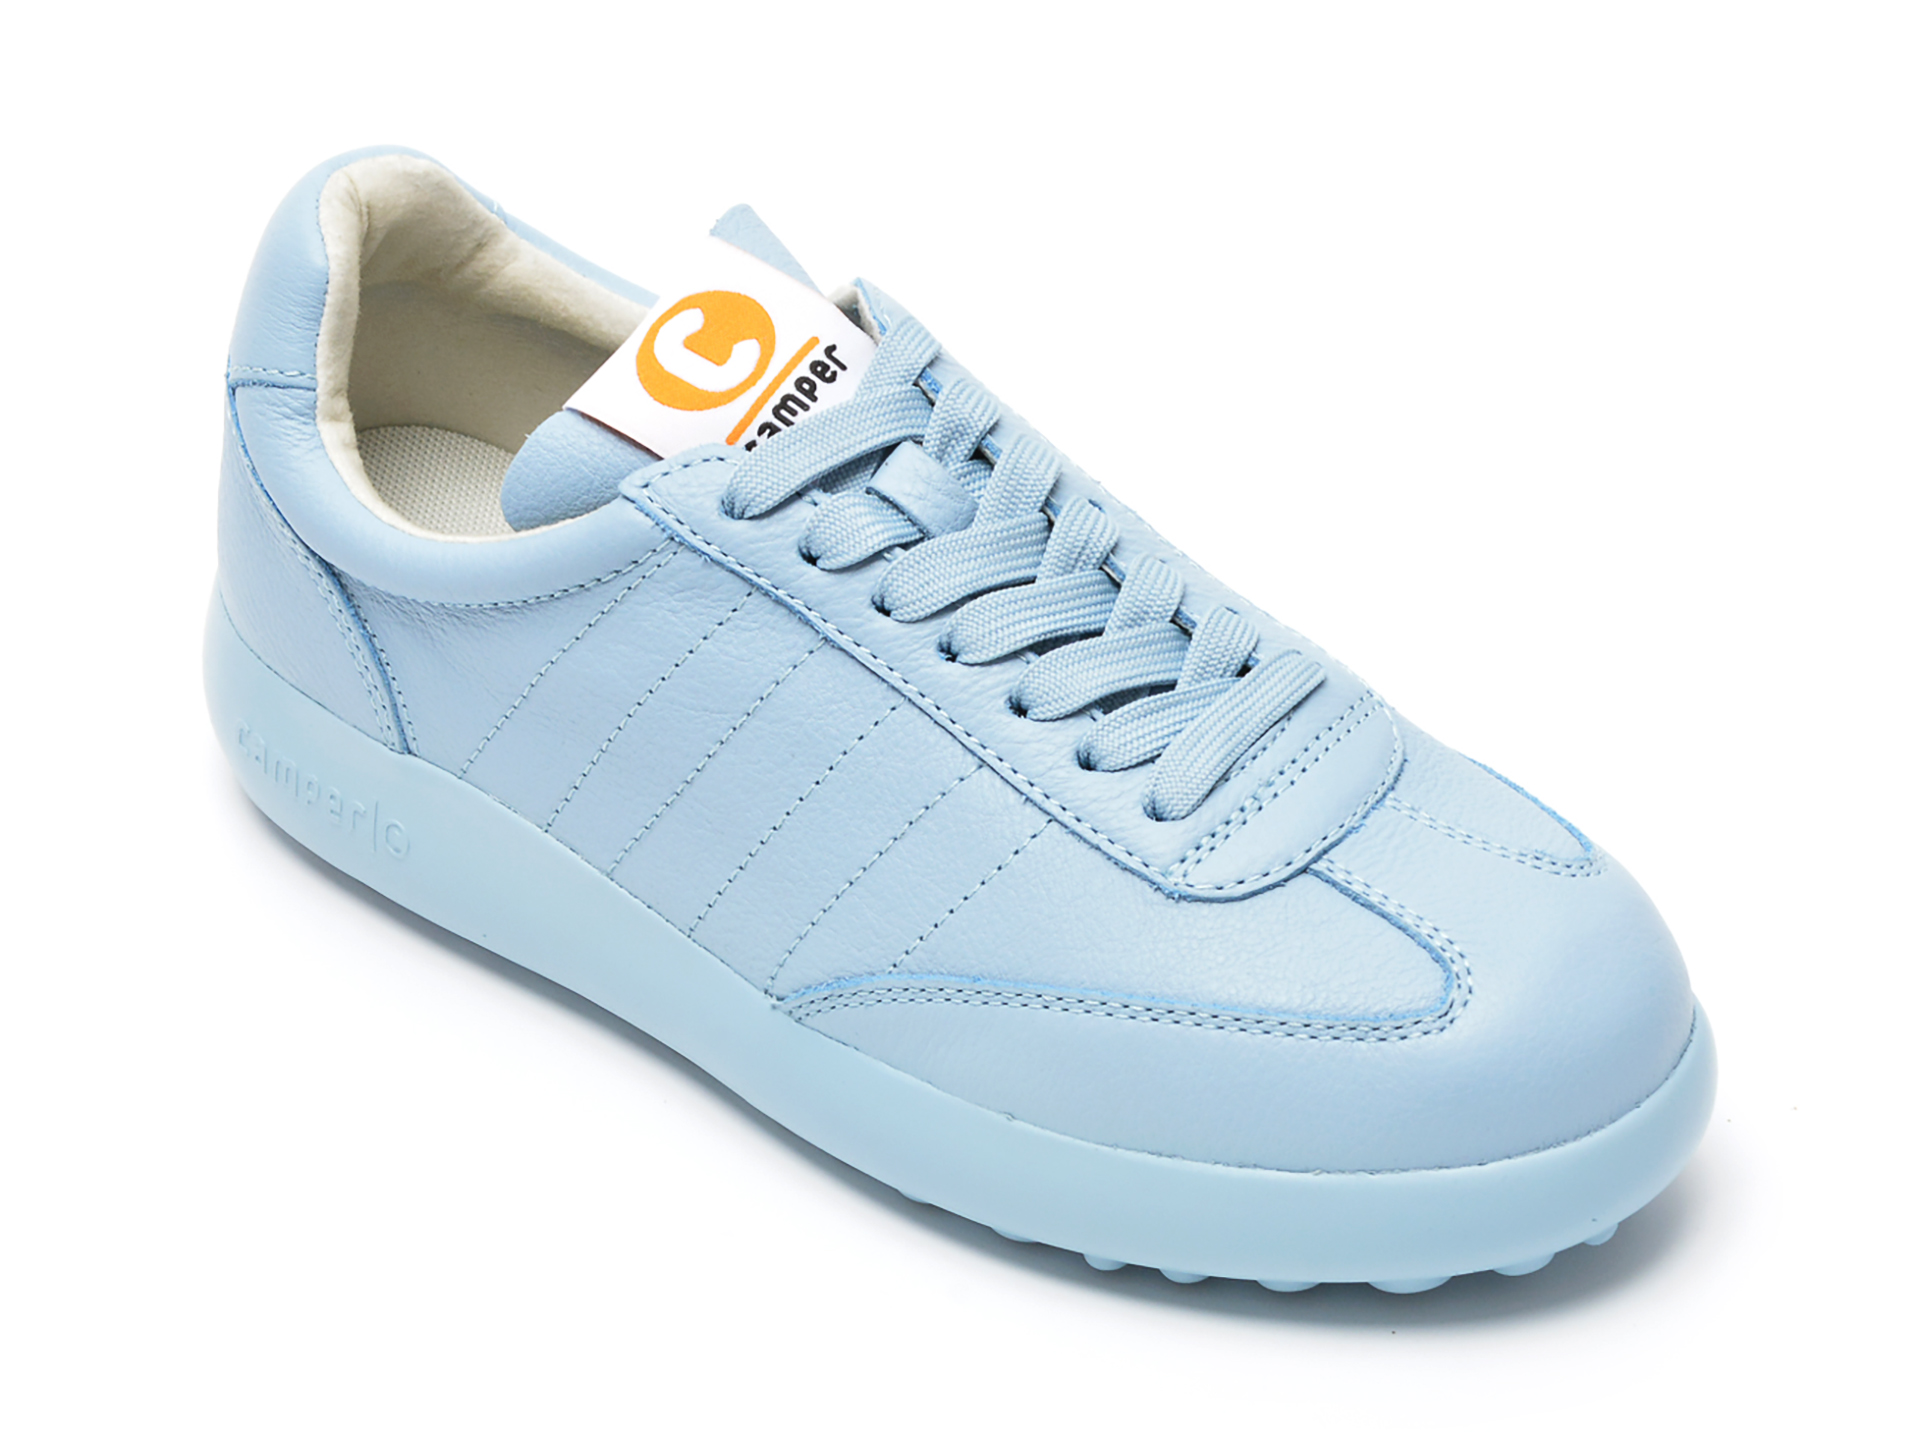 Pantofi sport CAMPER albastri, K201392, din piele naturala